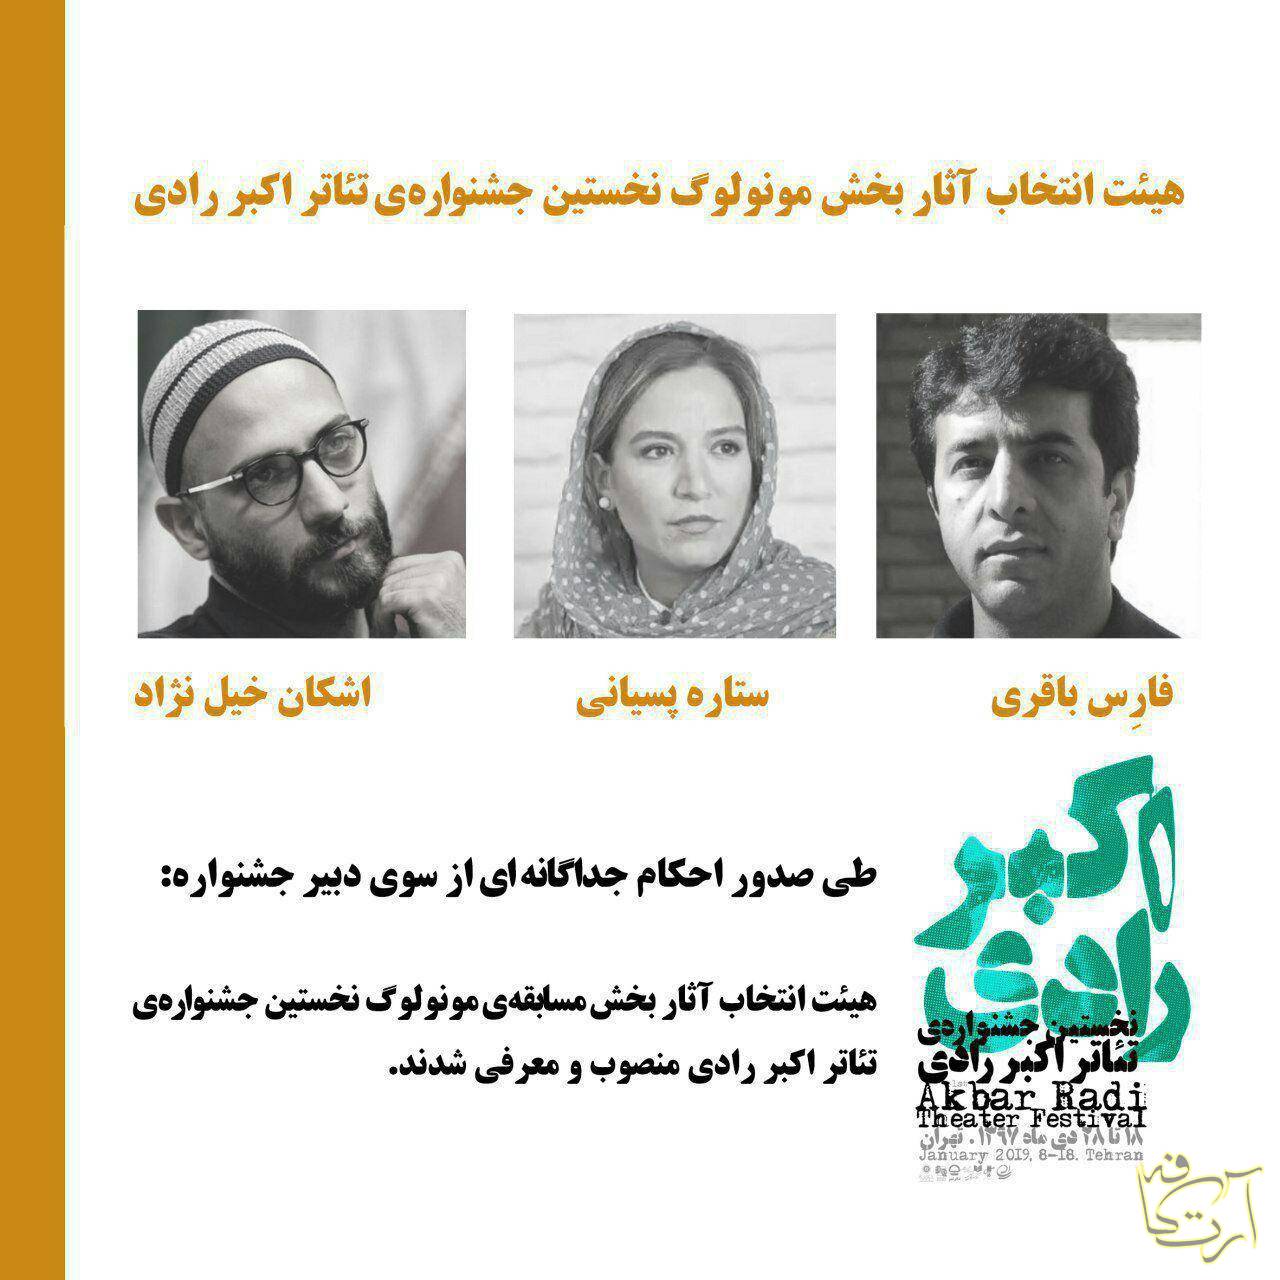 تئاتر فارس باقری  اشکان خیل نژاد   ستاره پسیانی   بهزاد صدیقی جشنواره اکبررادی